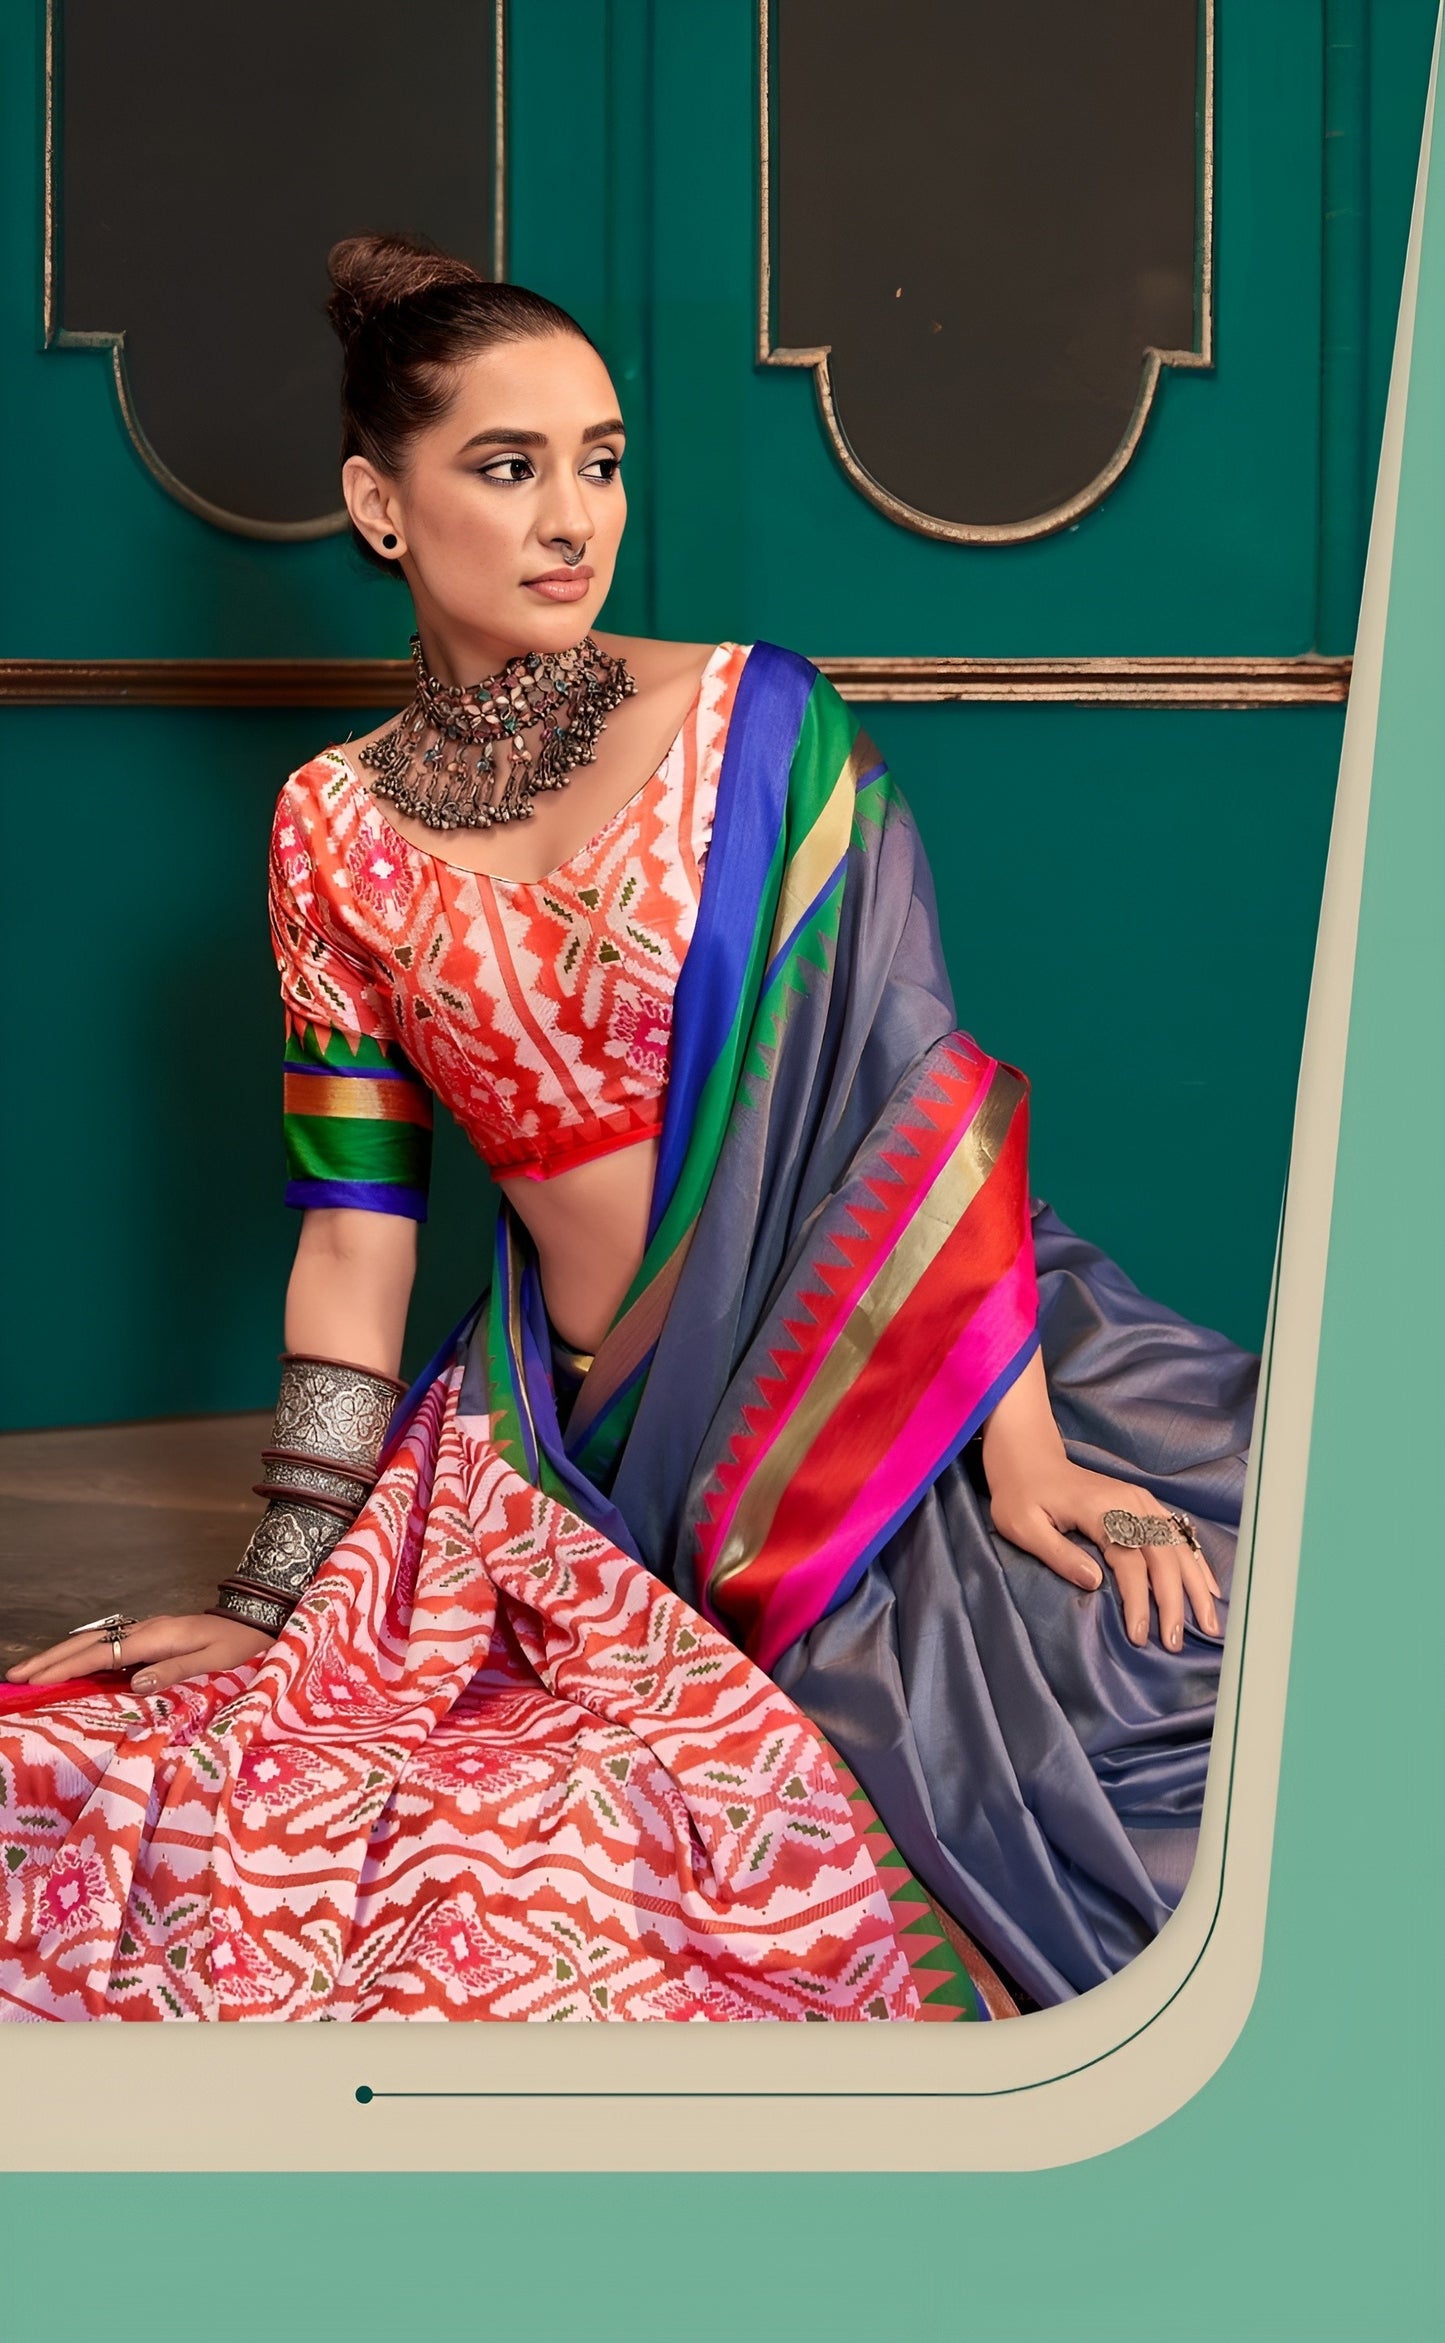 EKKTARA Saree For Women Dark Grey Colour Handloom Silk Saree With Unstitched Blouse